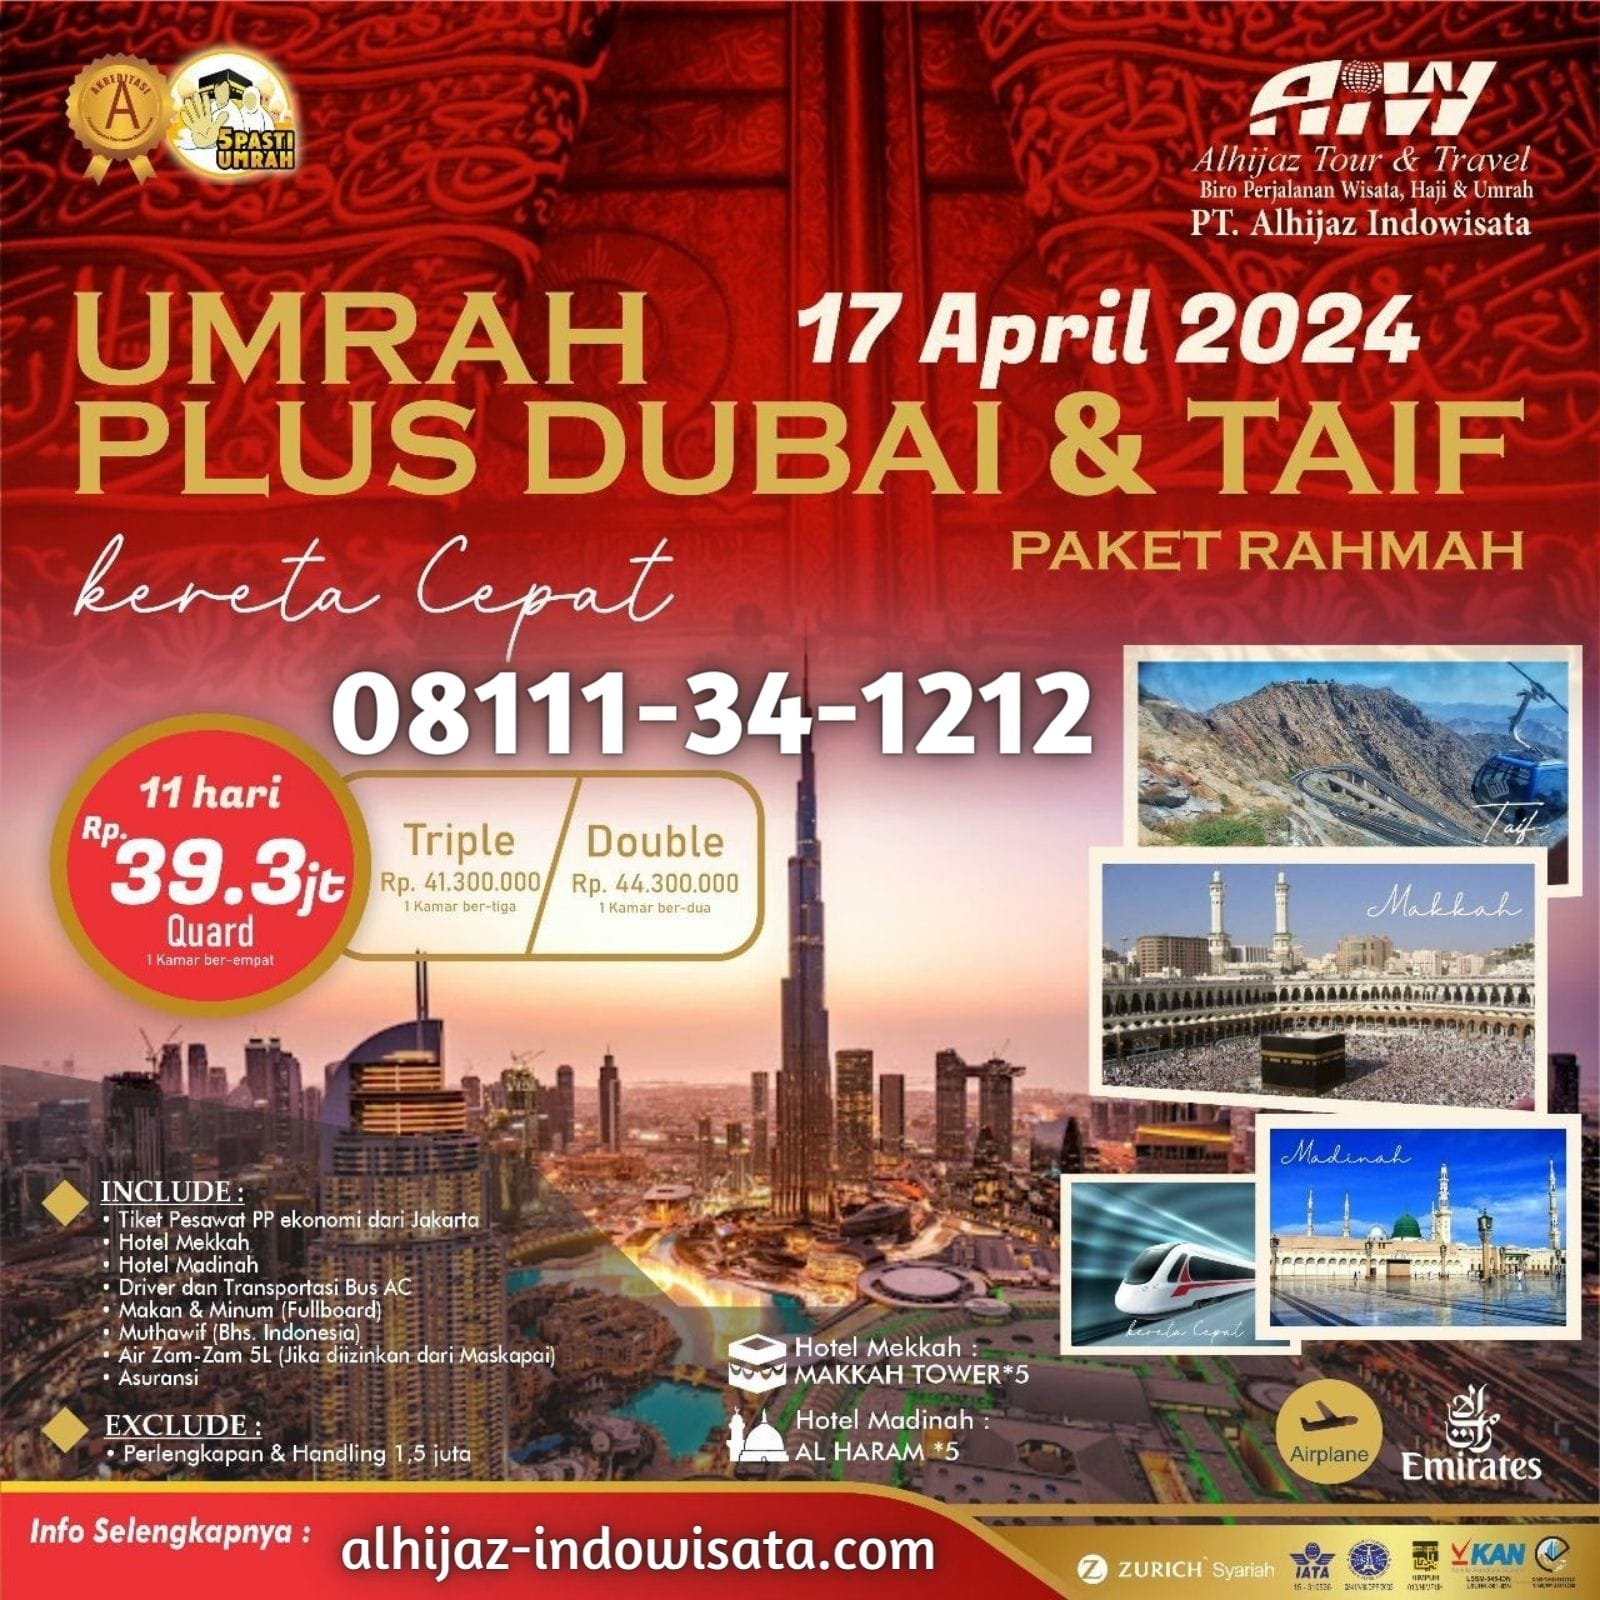 UMROH 11 HARI PAKET RAHMAH PLUS DUBAI + THAIF 17 APRIL 2024